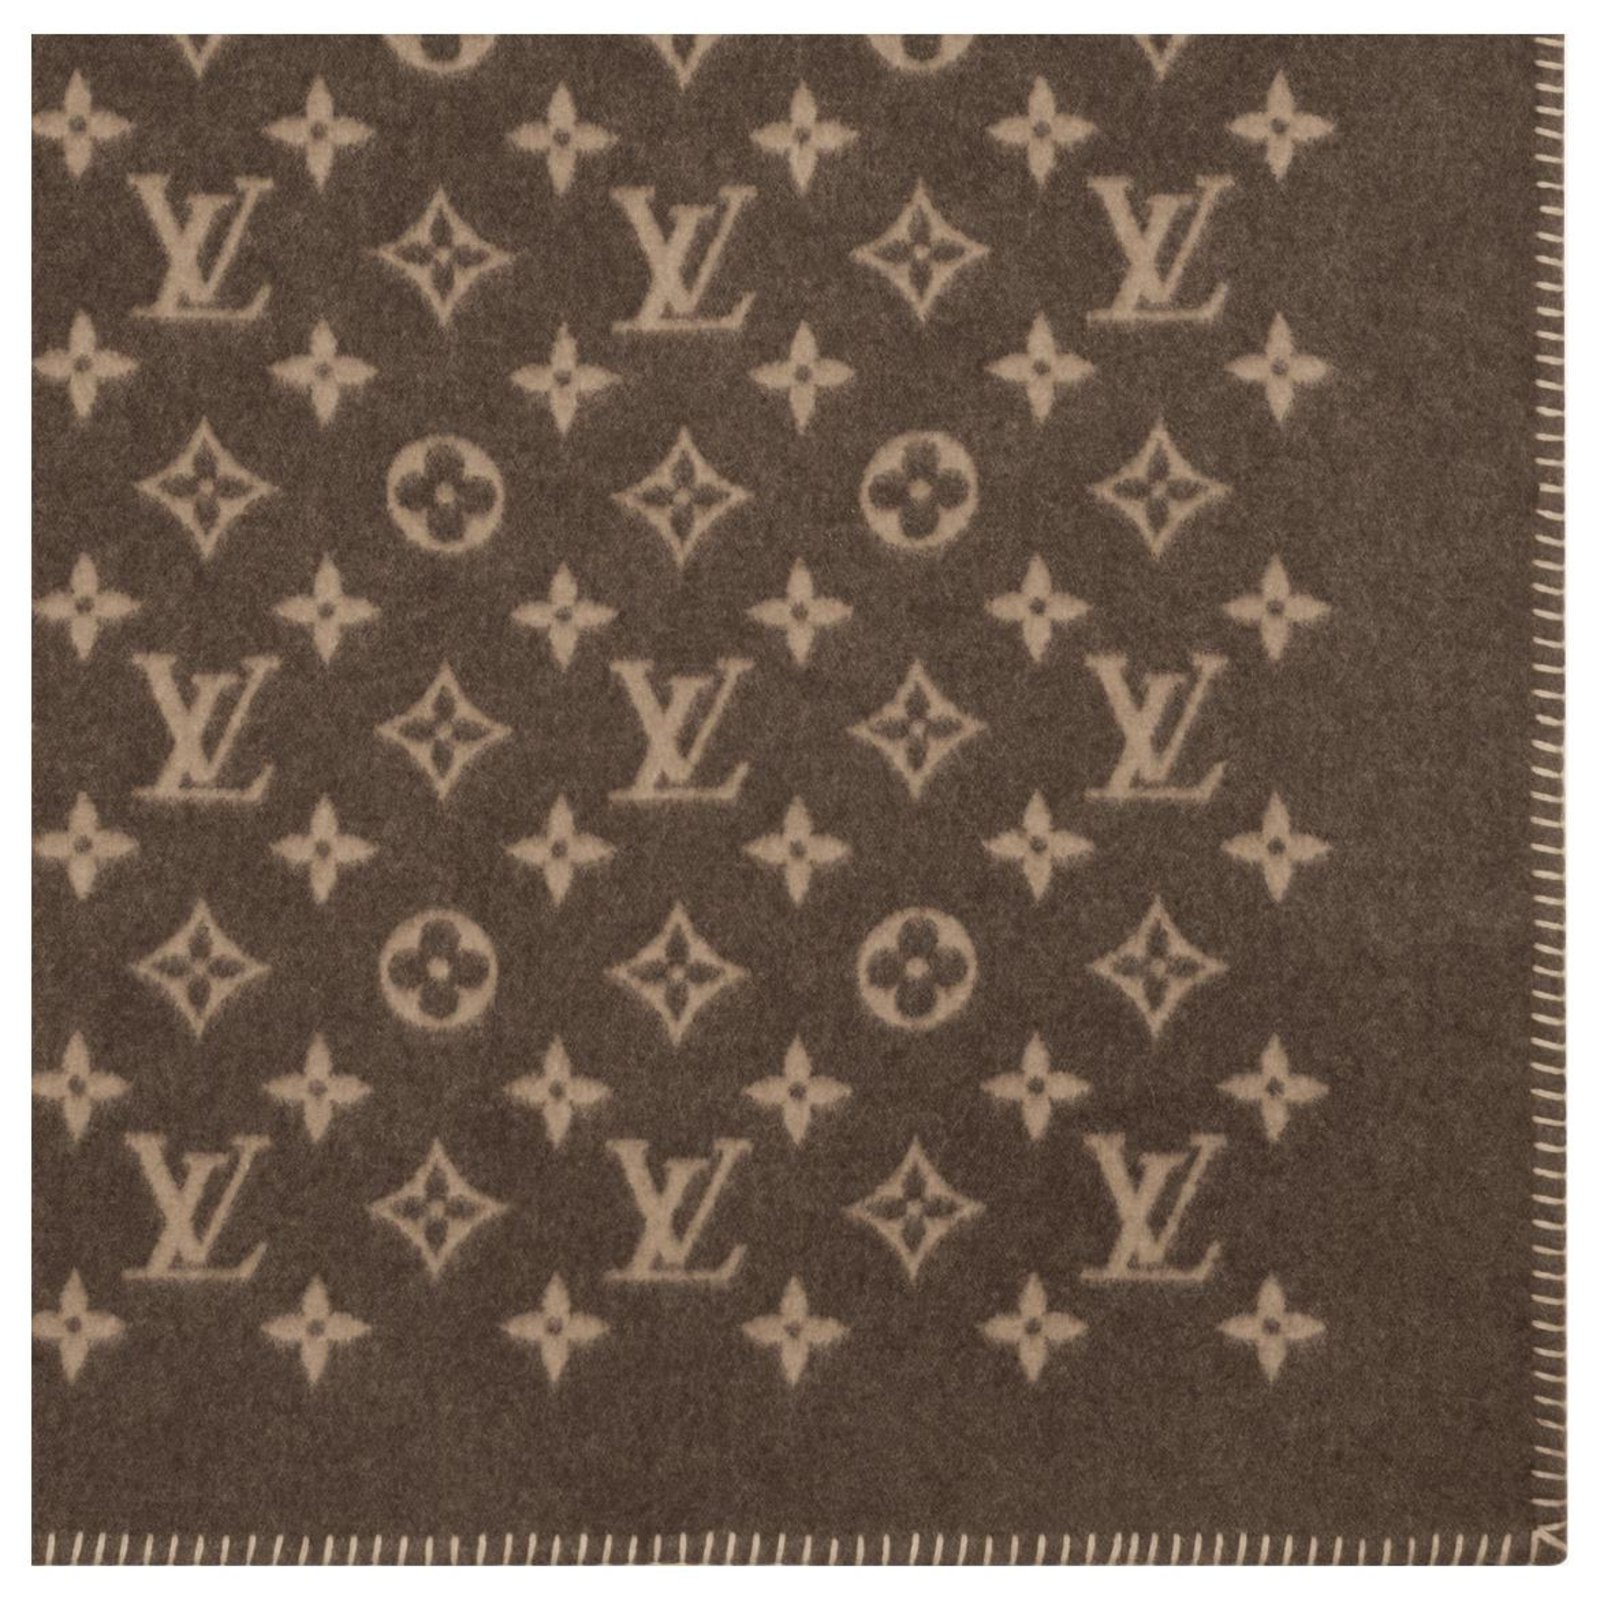 LOUIS VUITTON Wool Cashmere Monogram Blanket Beige 1214563